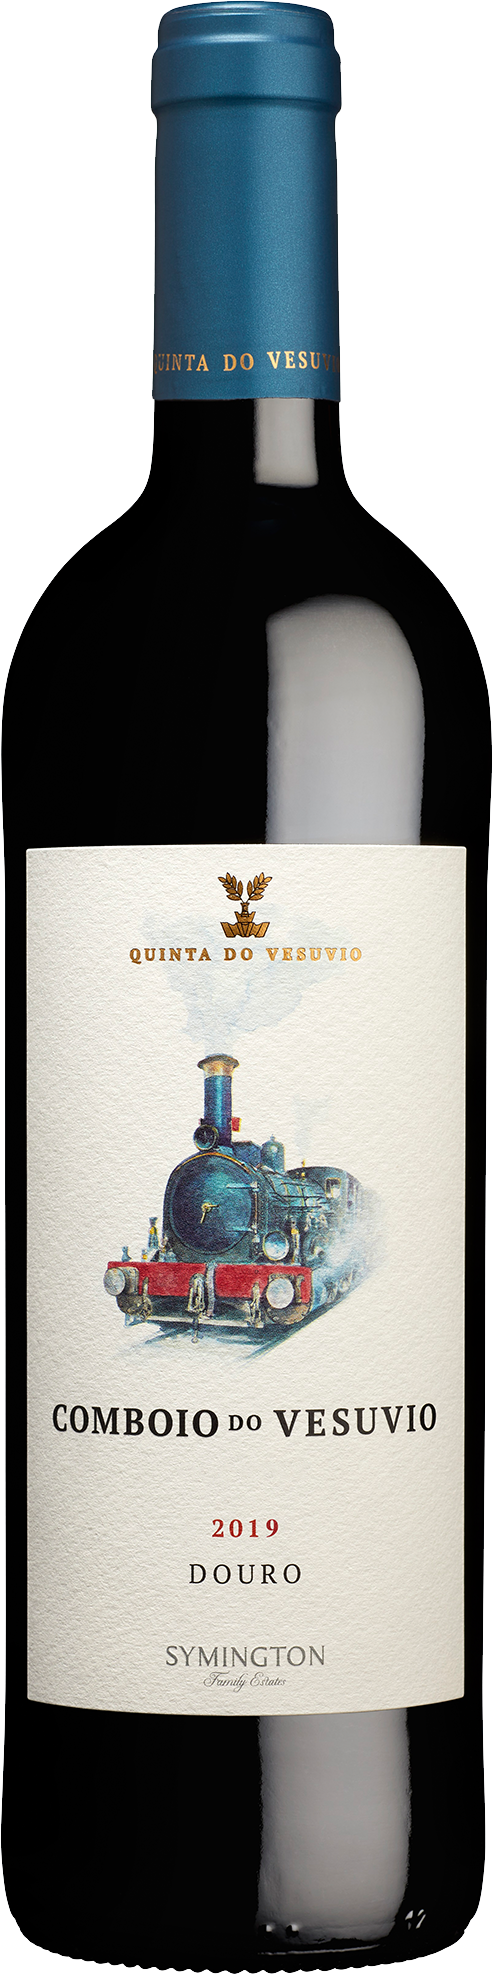 Product Image for COMBOIO DO VESUVIO DOURO RED 2019